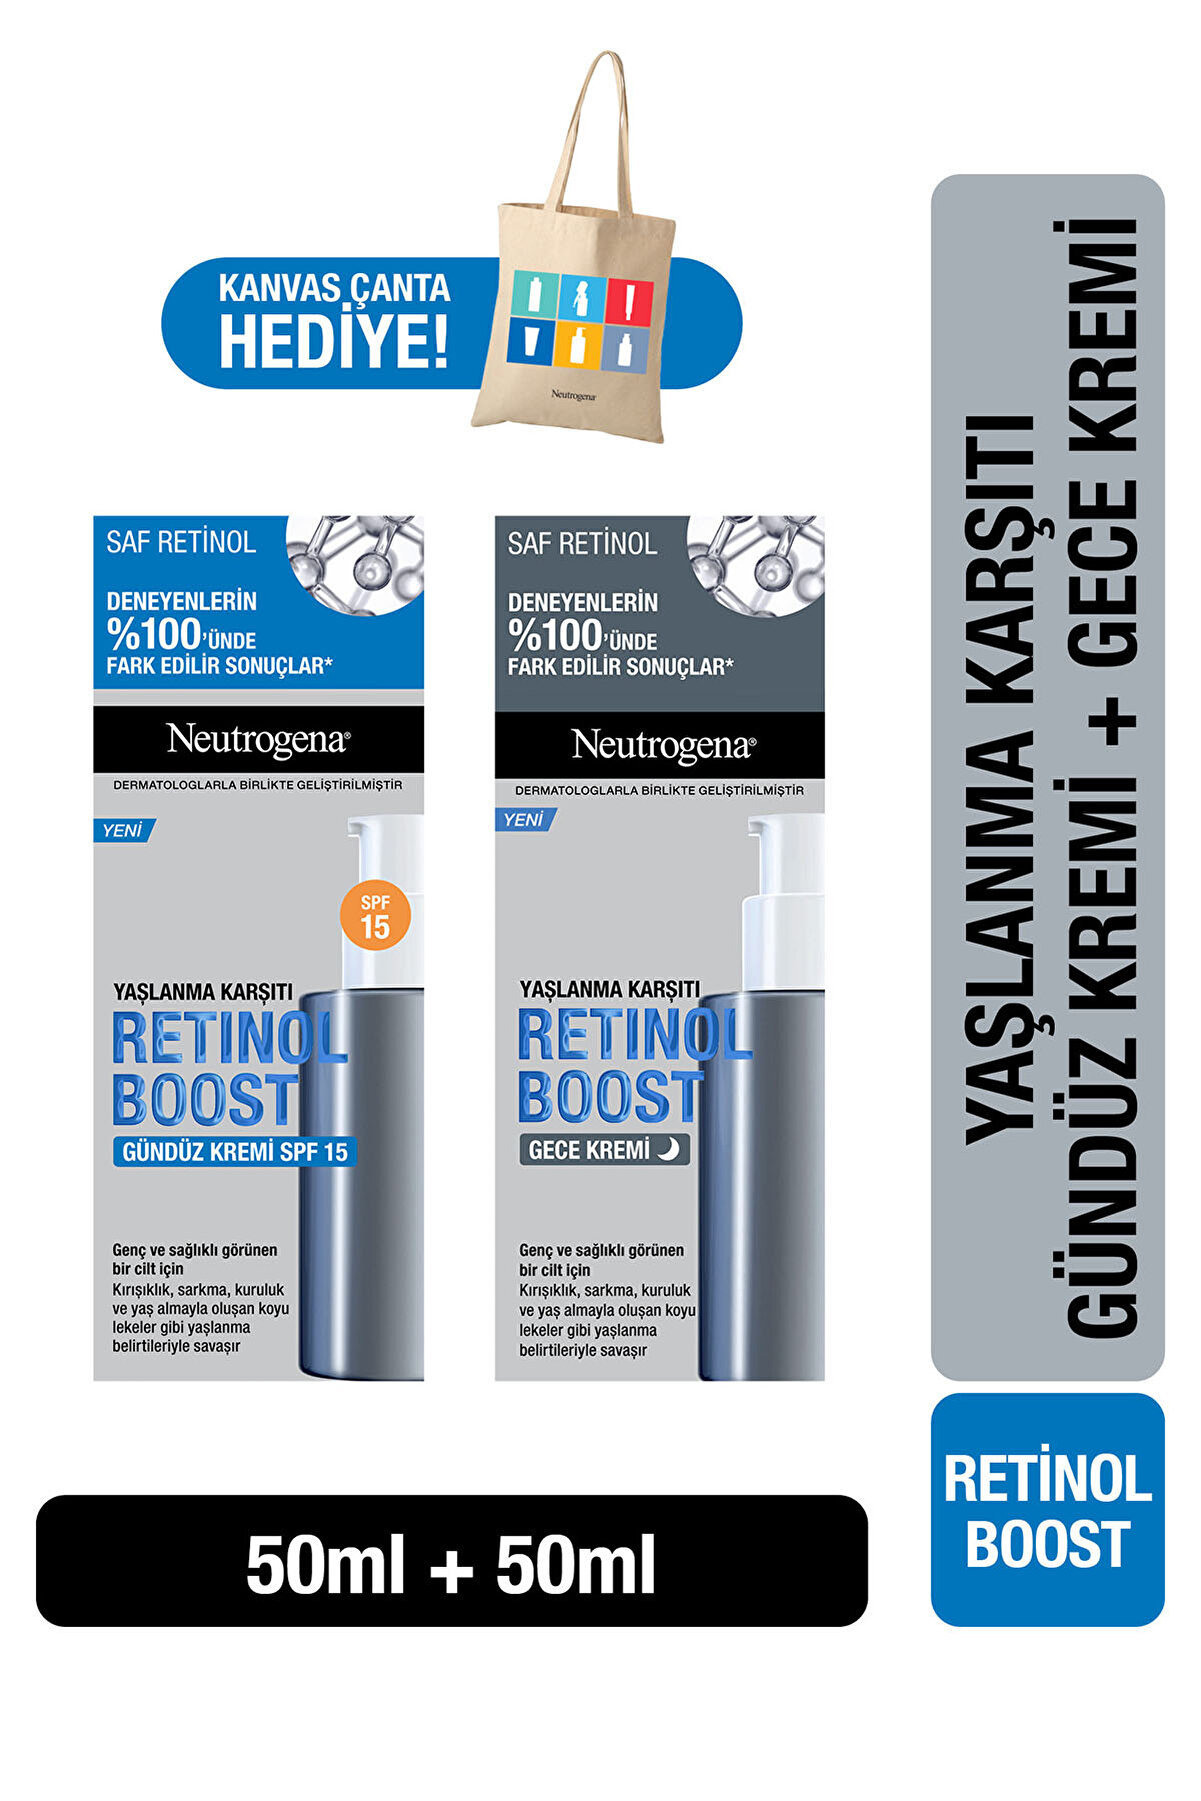 Neutrogena Retinol Boost Kırışıklık Karşıtı Gündüz Kremi Antiaging + Retinol Boost Gece Kremi Çanta Hediyeli